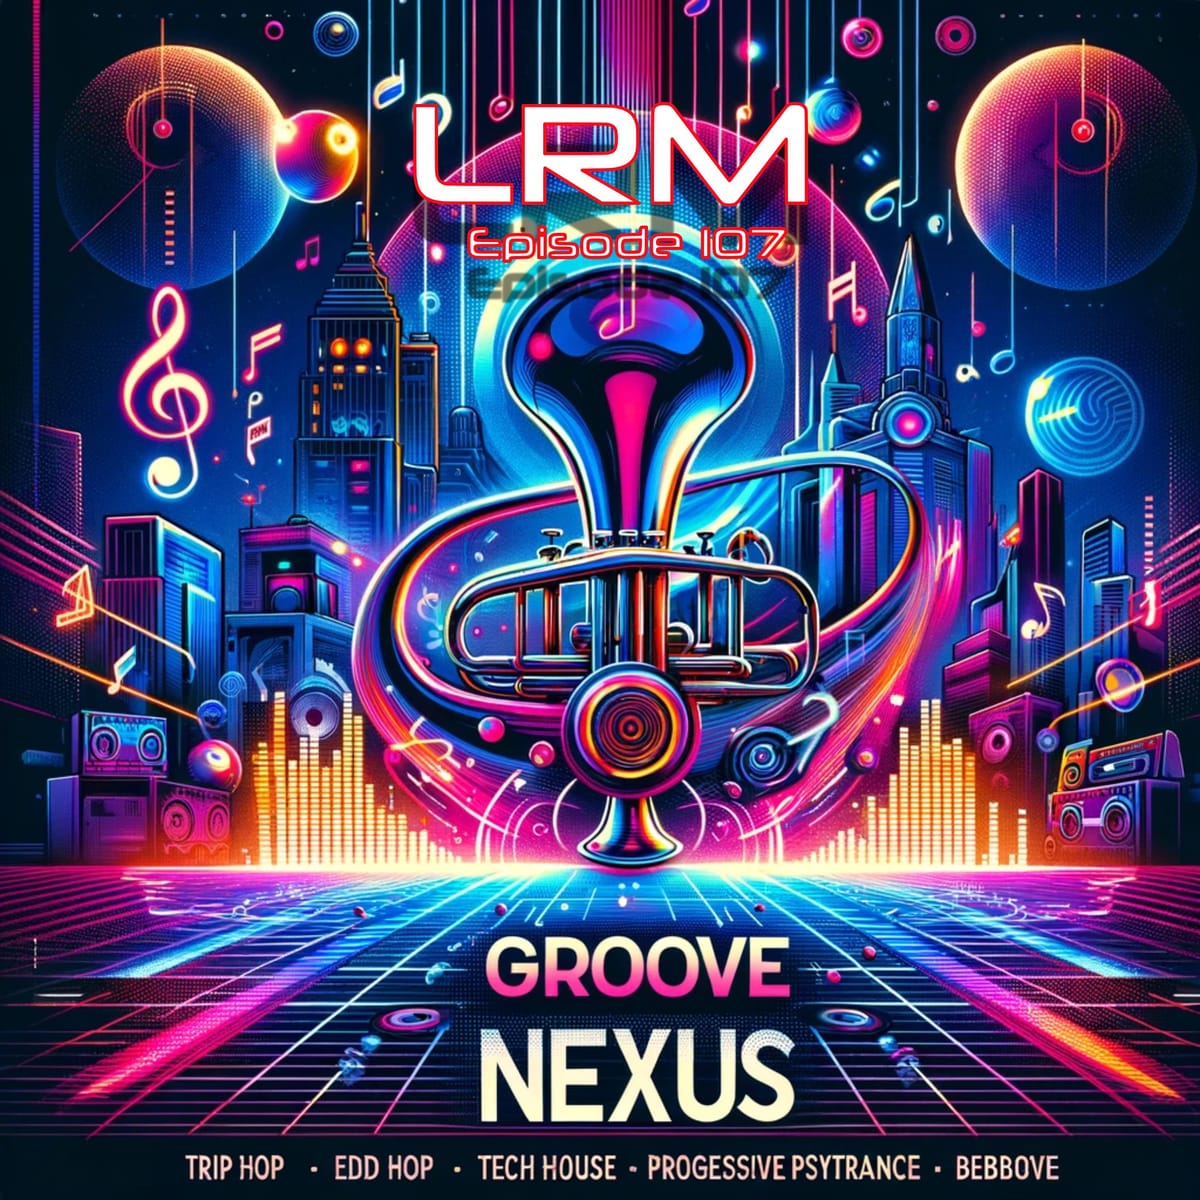 Groove Nexus